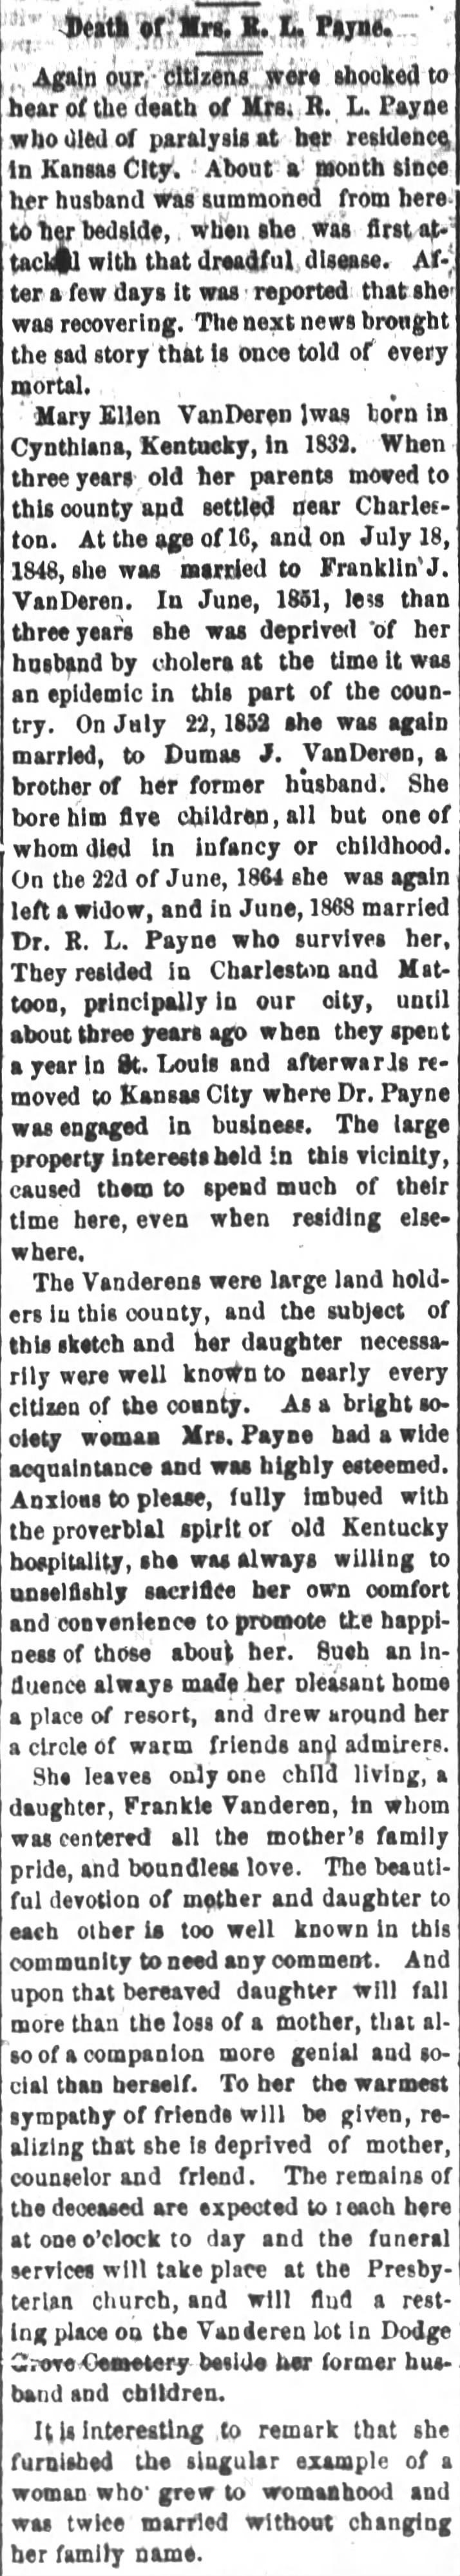 Vanderen Mary Ellen Payne 
Mattoon Gazette Mattoon, Illinois 16 Jan 1880 Friday page 1